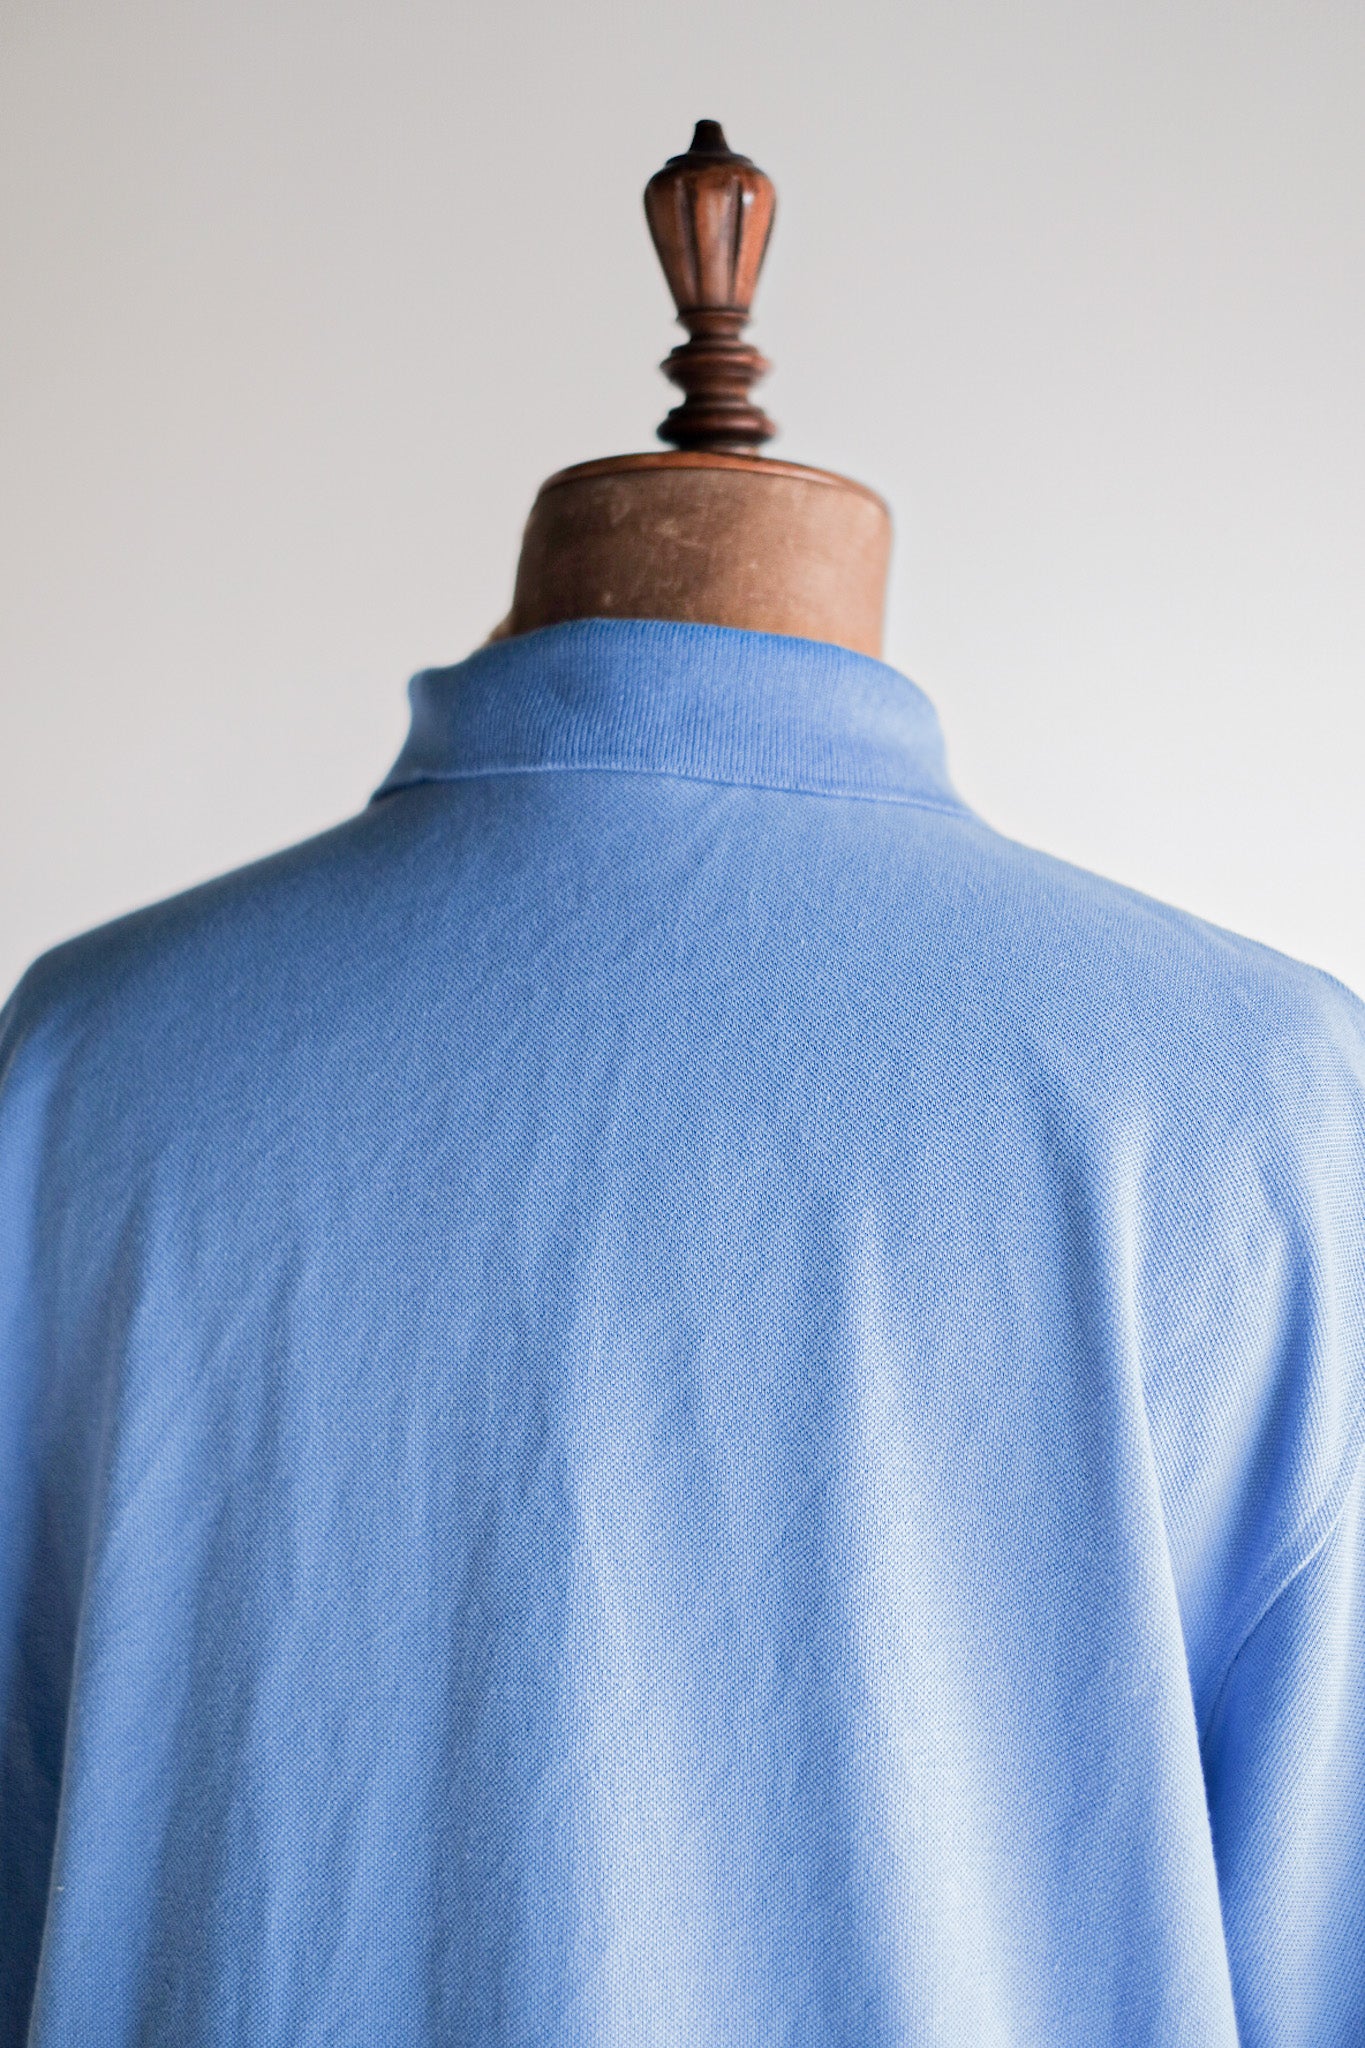 [〜90年代]顏色的lacoste s/s polo襯衫尺寸。7“淺藍色”